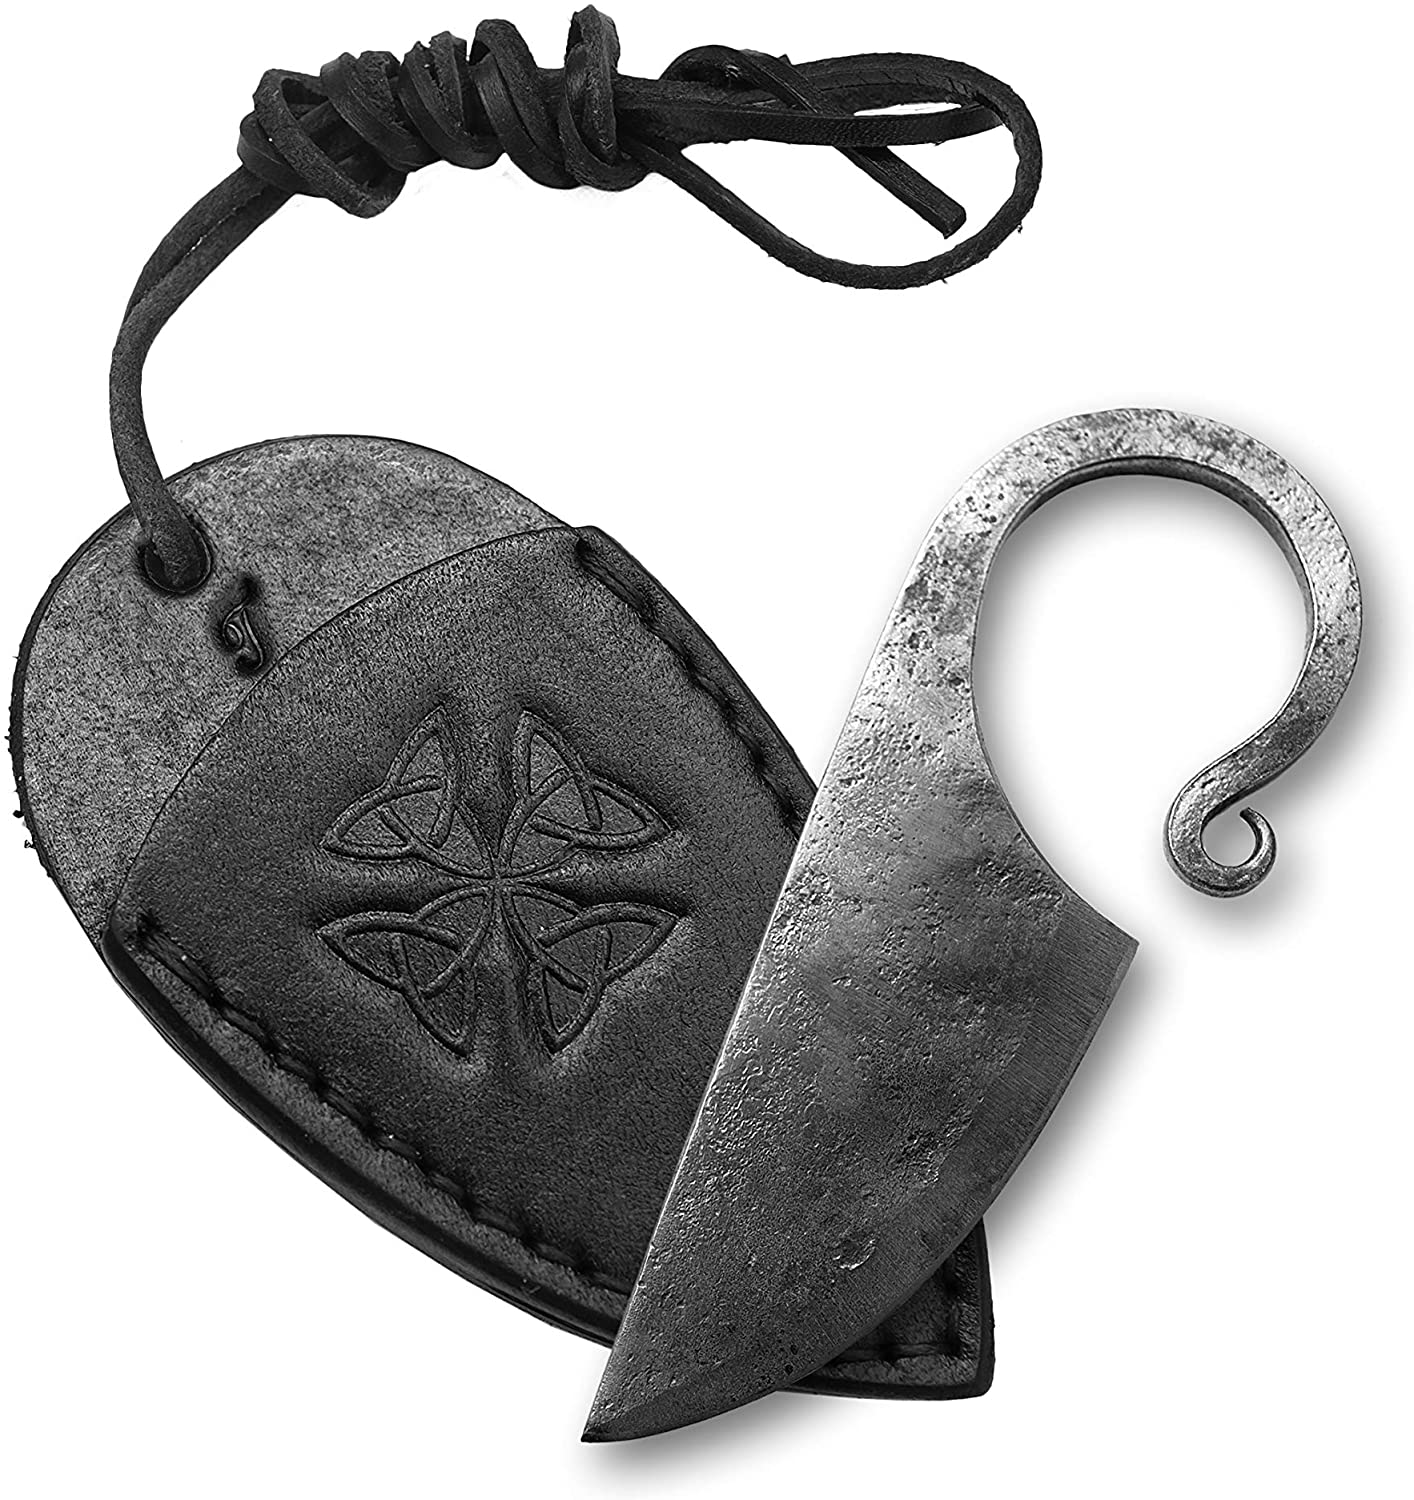 Kovaný keltský nůž C1 s pochvou